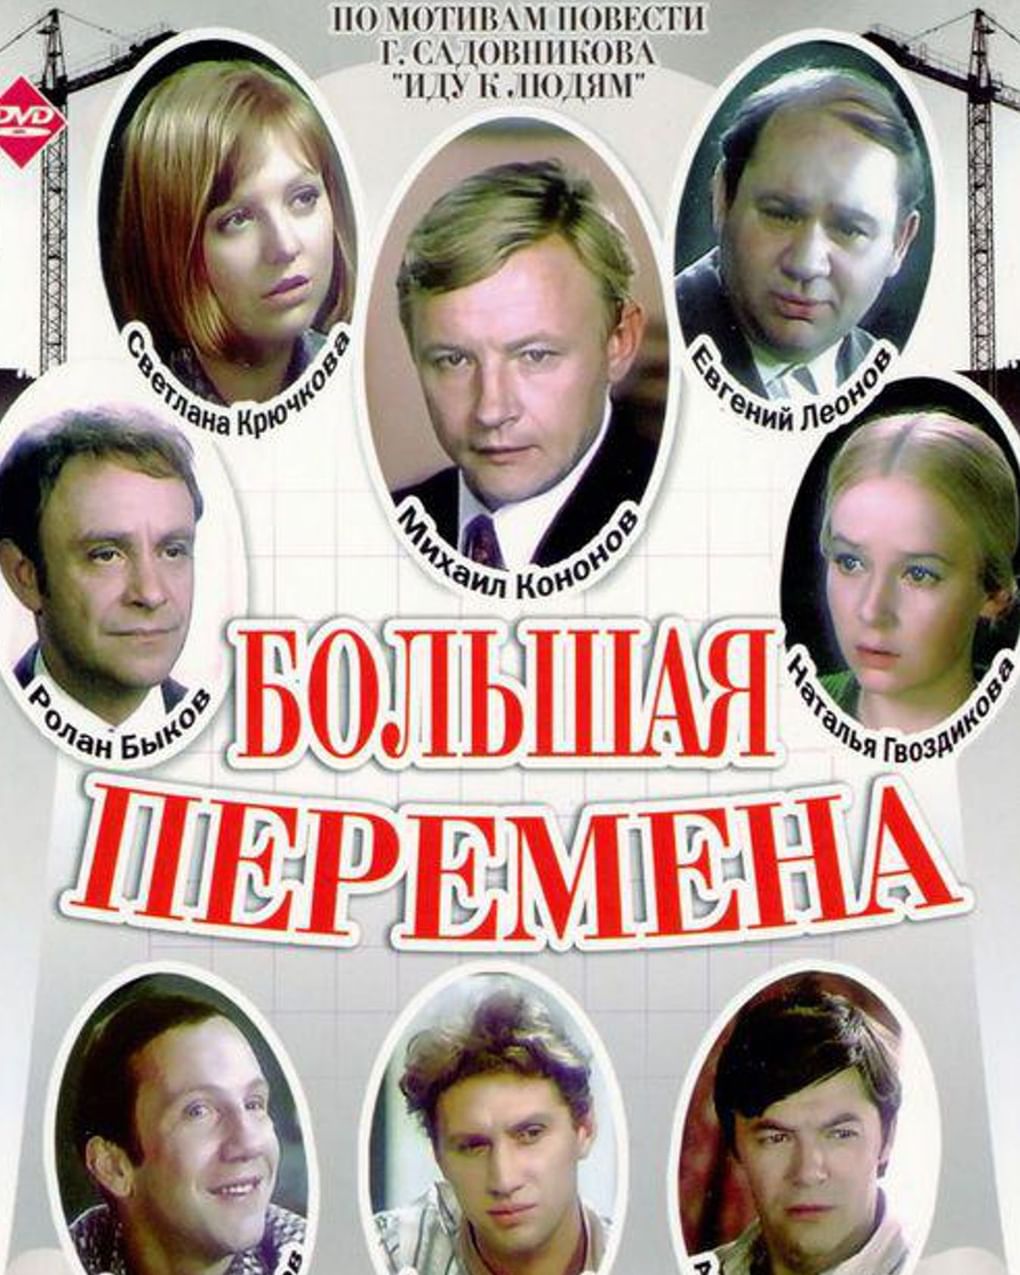 Постер художественного фильма Алексея Коренева «Большая перемена» (1972)